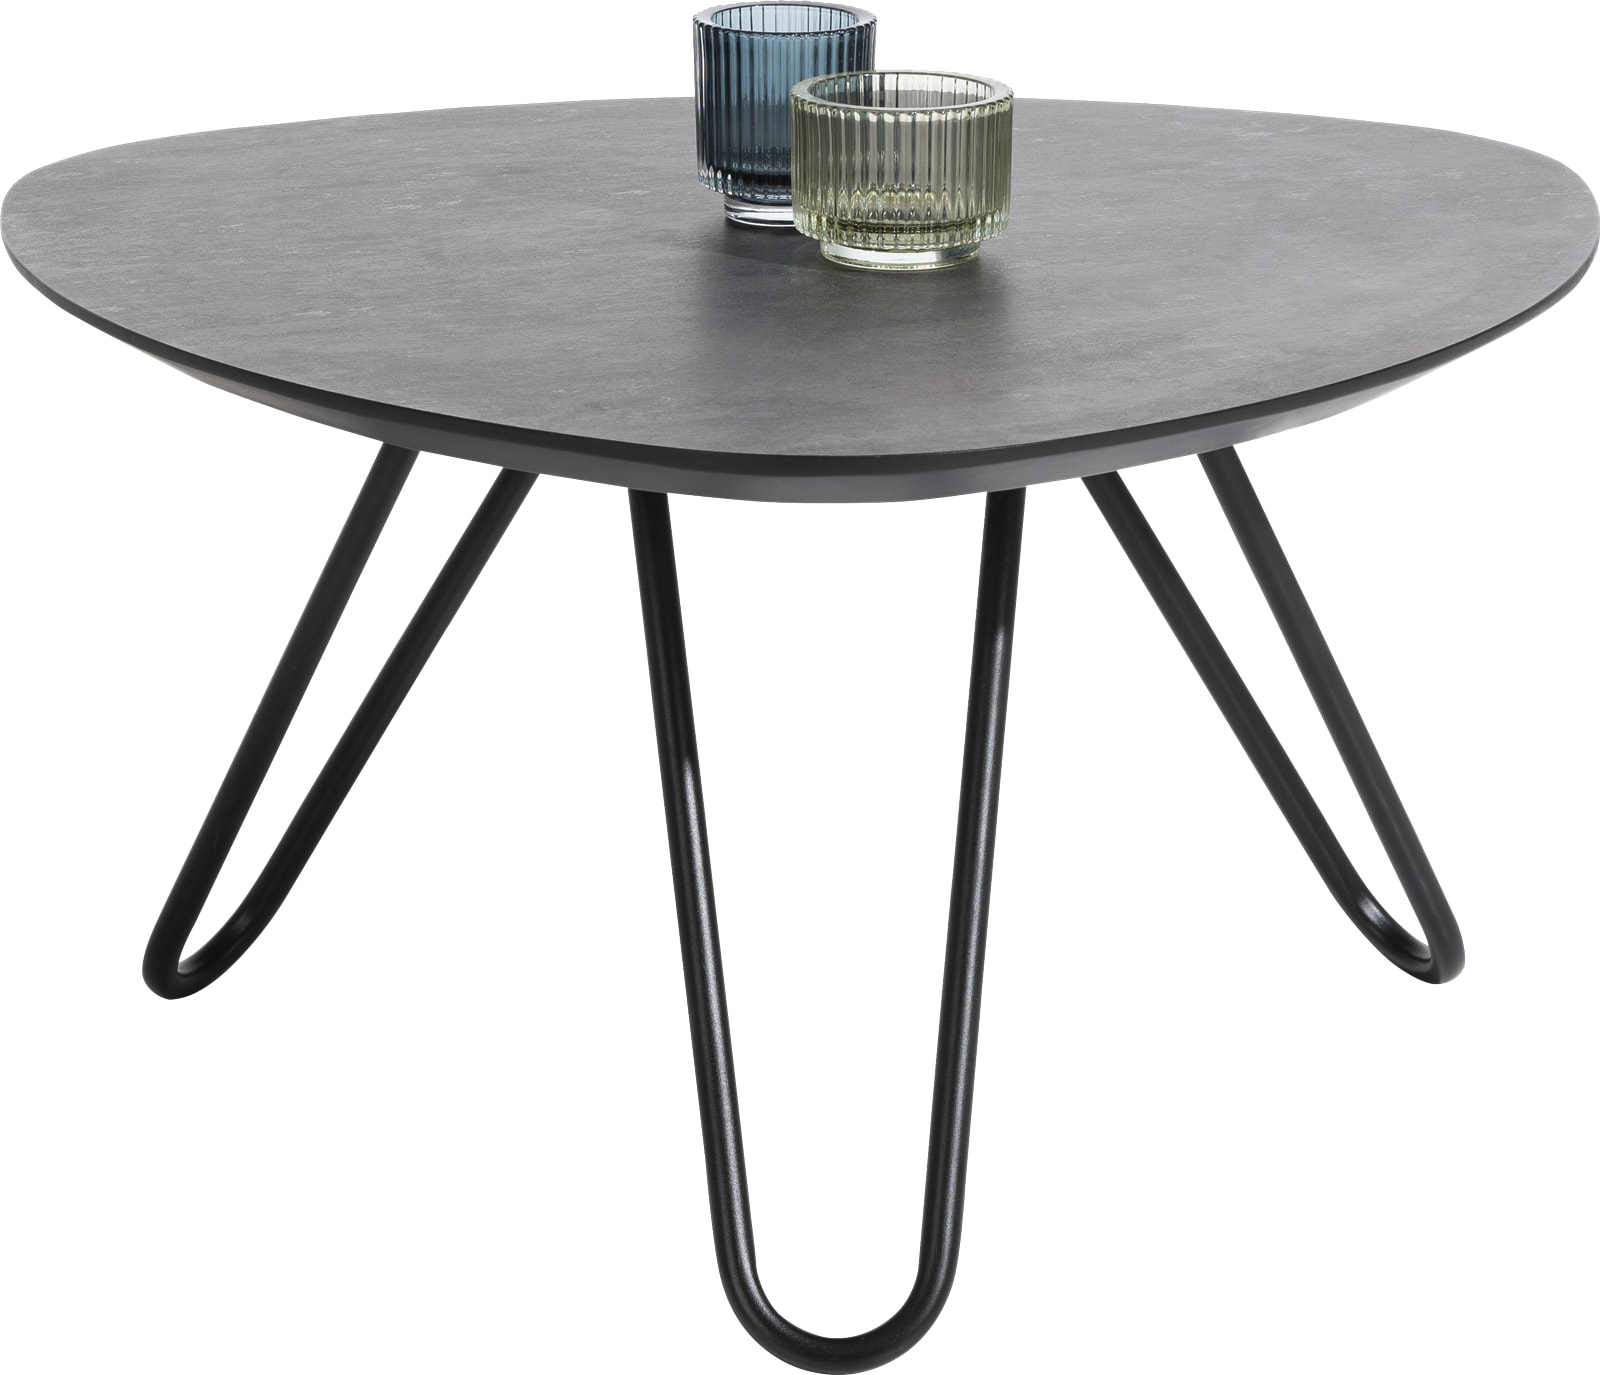 Zeestraat Oom of meneer Pardon Masura hoge salontafel met zwart metalen poot 68x67,5cm